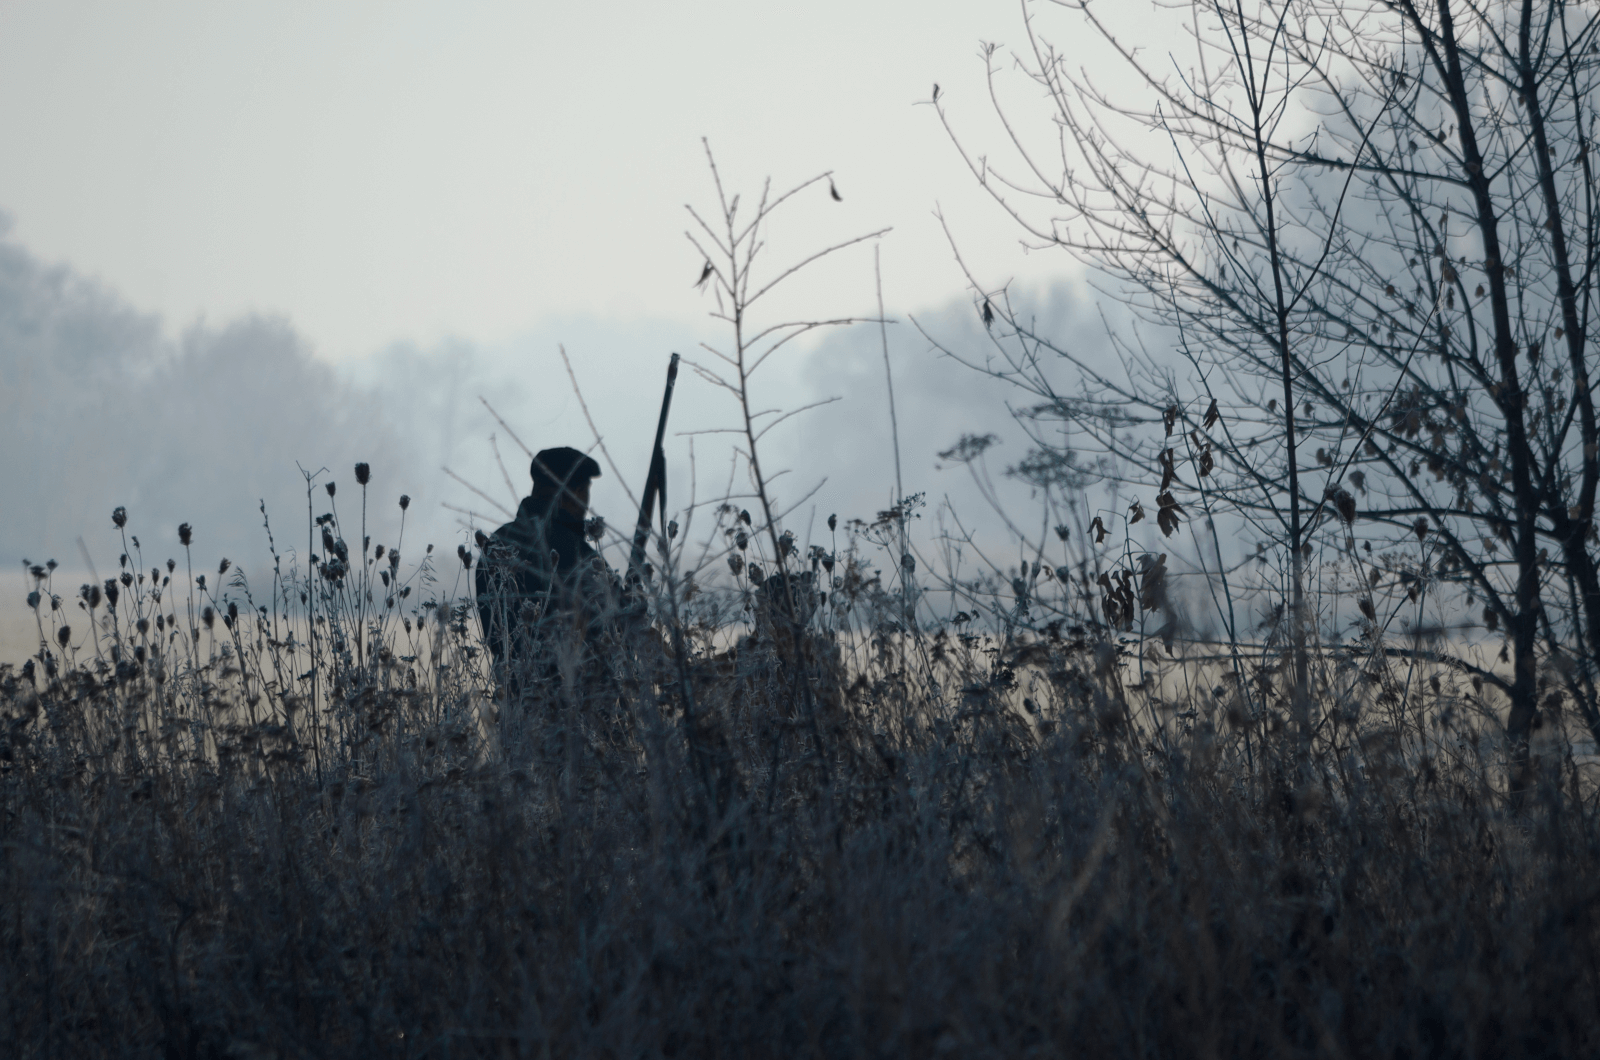 Das Foto zeigt einen Jäger mit seinem Hund, welche hinter einer Böschung stehen. Der Blick des Jägers ist auf das weite Feld im Hintergrund gelegt. Er steht mit dem Rücken zum Betrachter. Der Hund ebenso. Der Jäger hält ein Gewehr in seiner Hand, dessen Schaft zu erkennen ist. Im Hintergrund, hinter dem Feld ist durch den Nebel ein Wald zu erkennen.